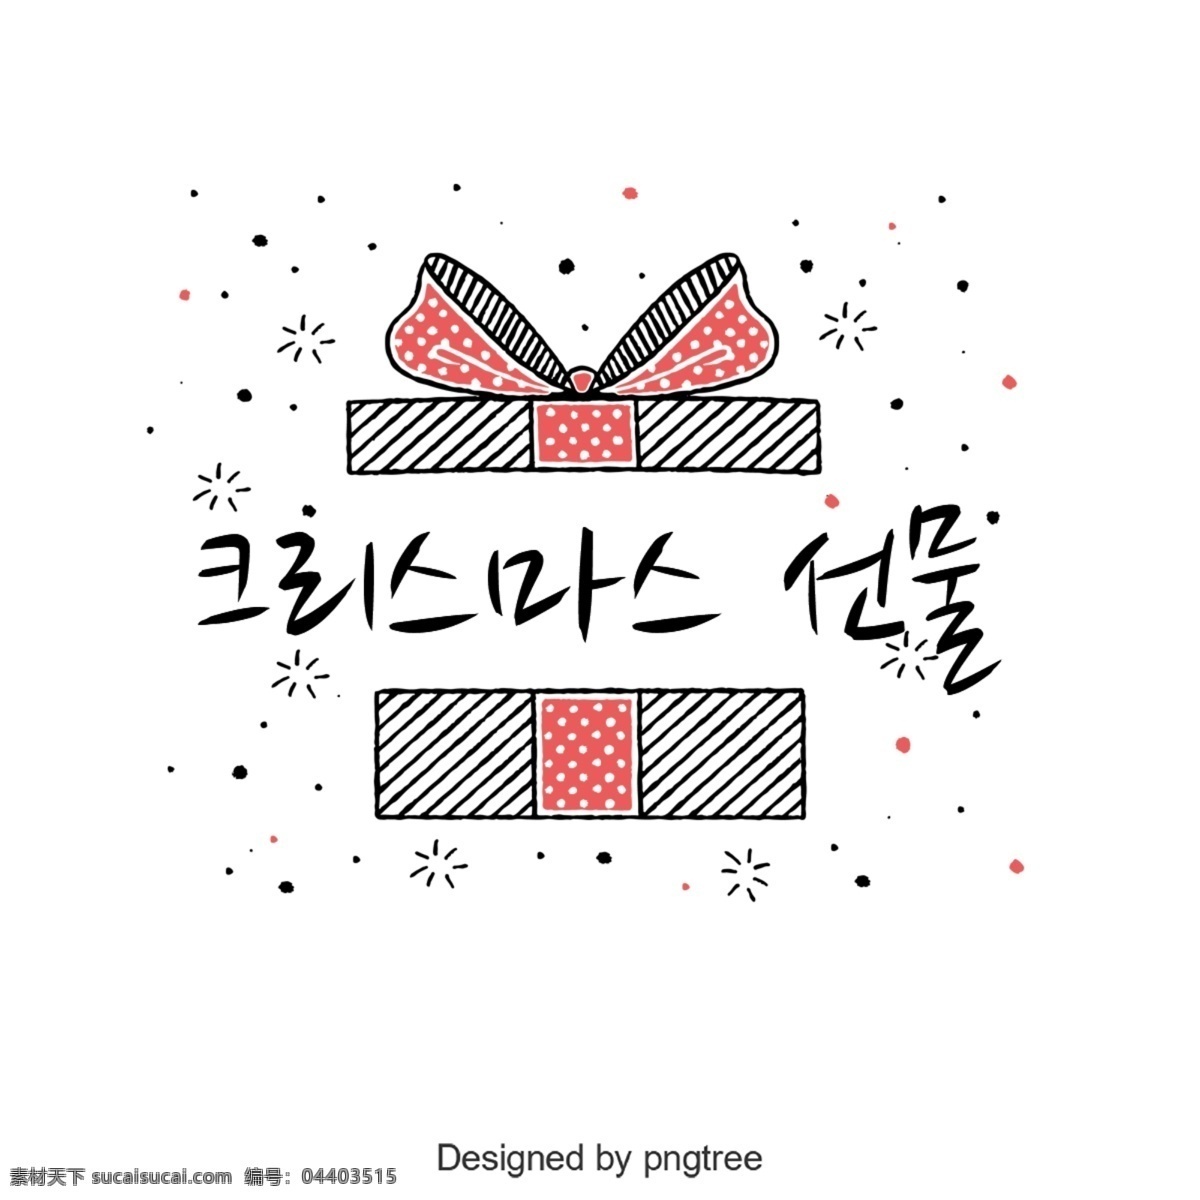 圣诞 礼物 韩国 字体 谢和 可爱 字形 韩文 礼品 圣诞节